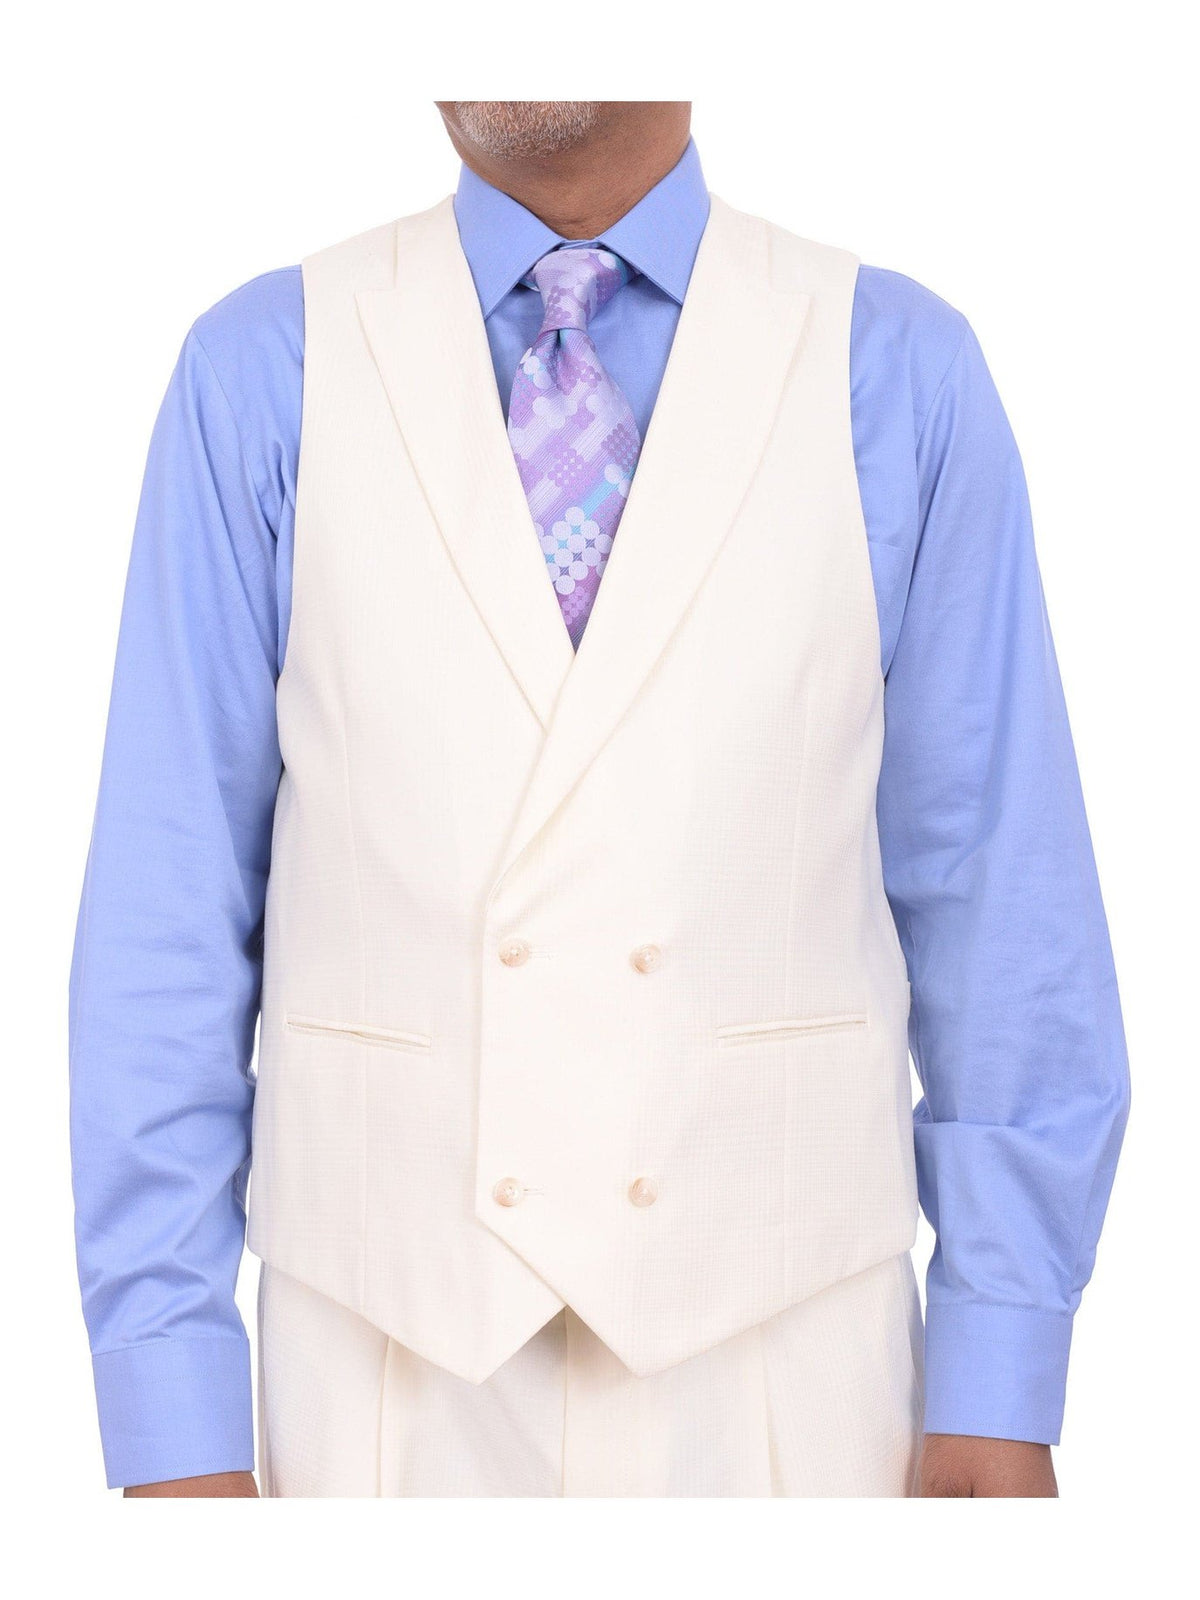 Steven Land Sale Suits Steven Land Cream Tonal Glen Plaid One Button Three Piece Suit With Peak Lapels